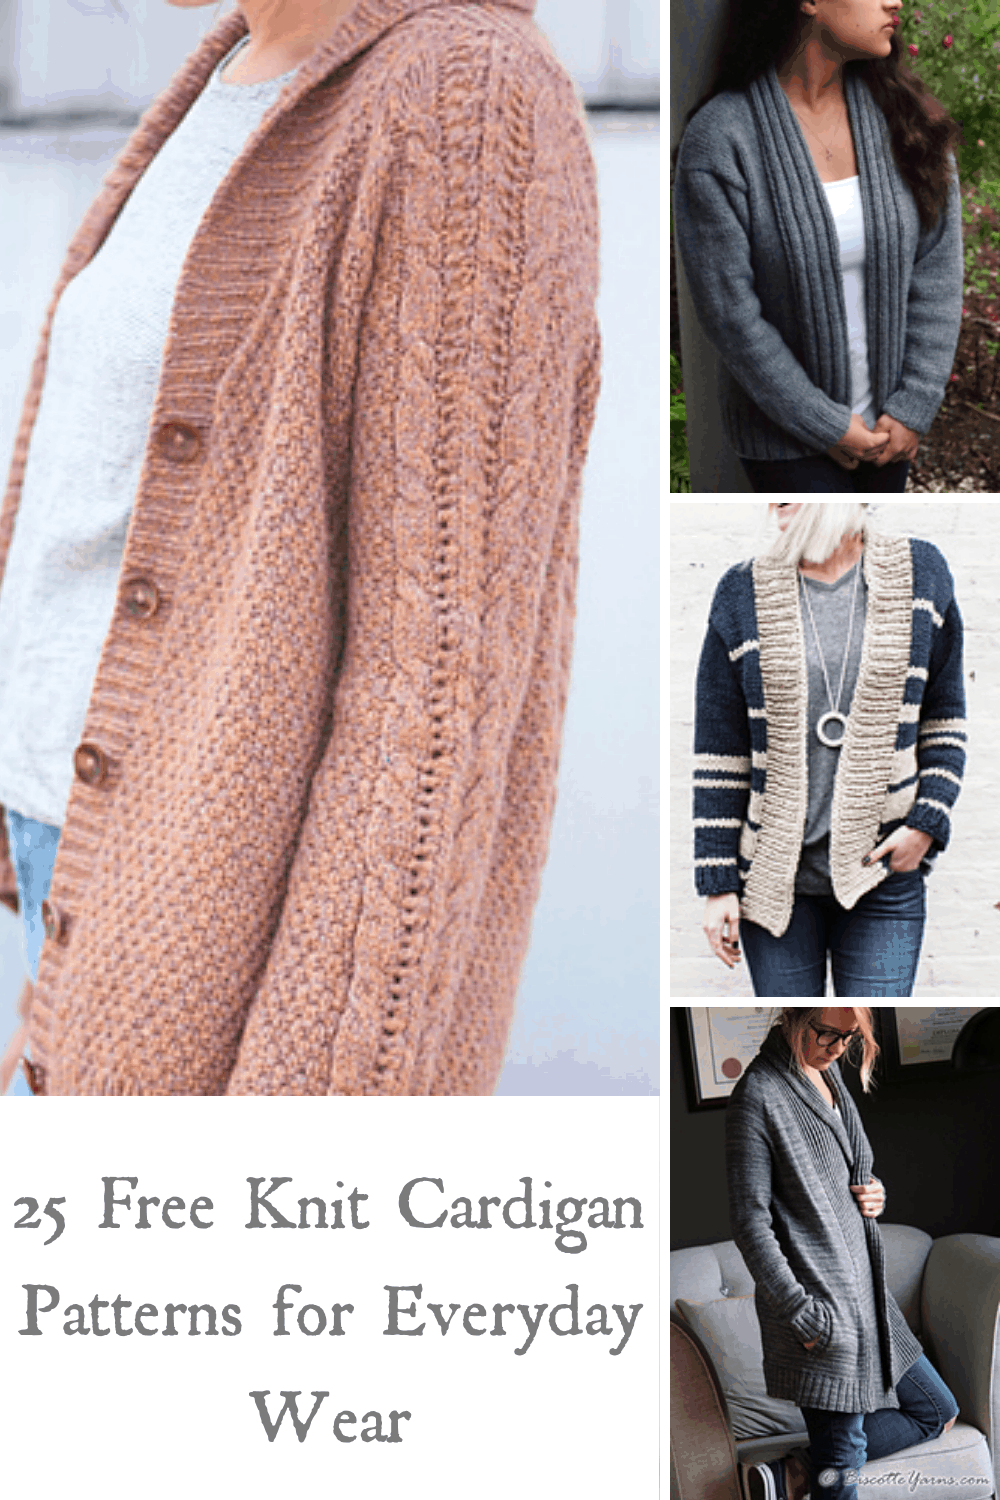 25 Free Knit Cardigan Patterns for Everyday Wear - yarn.